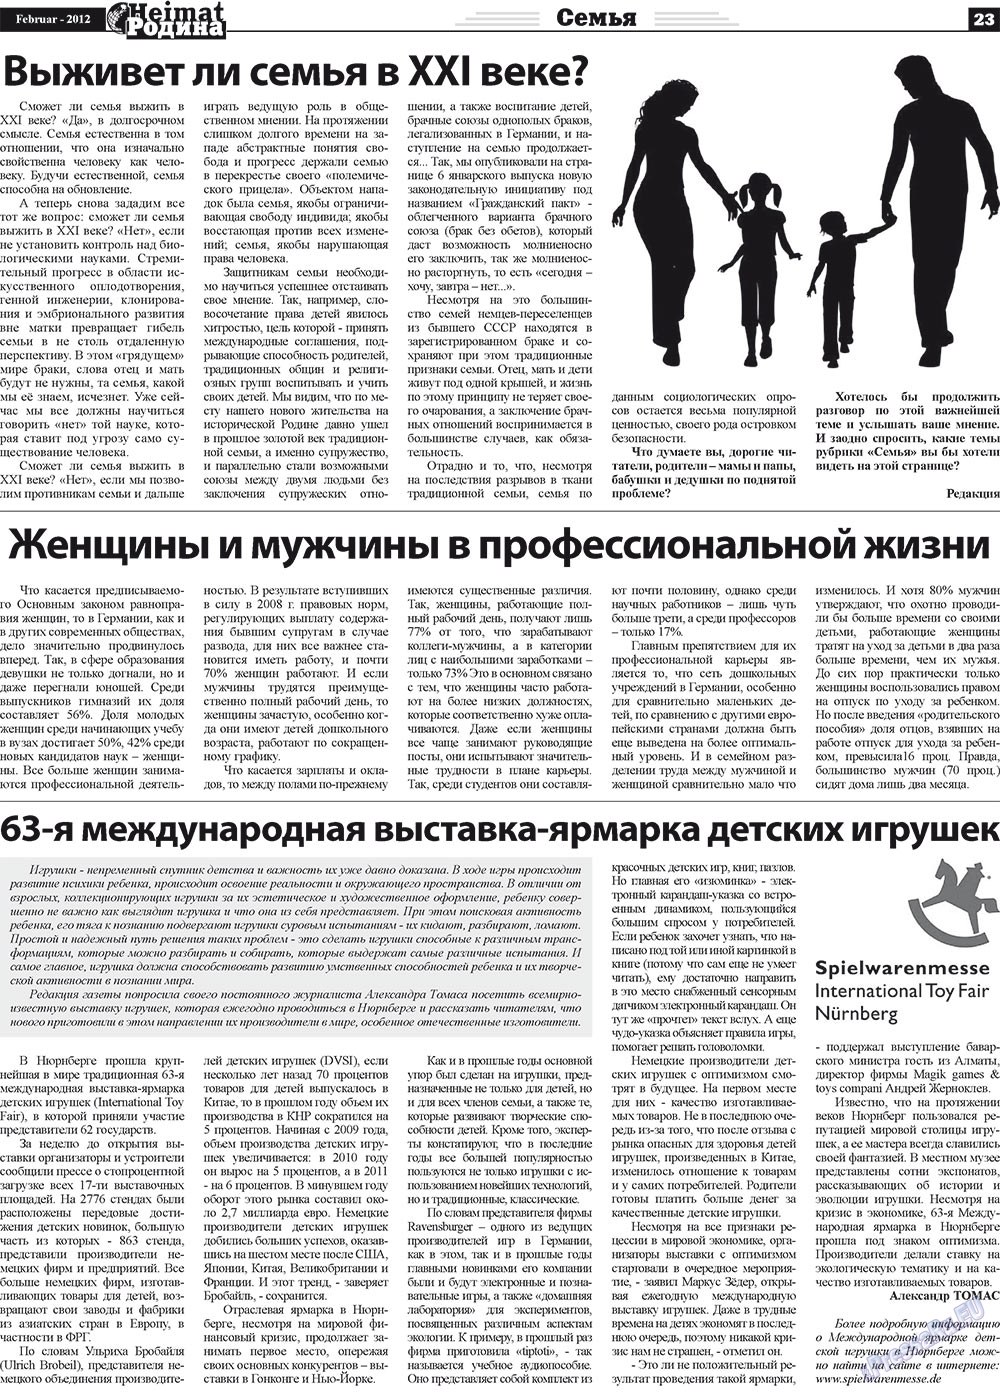 Heimat-Родина (газета). 2012 год, номер 2, стр. 23